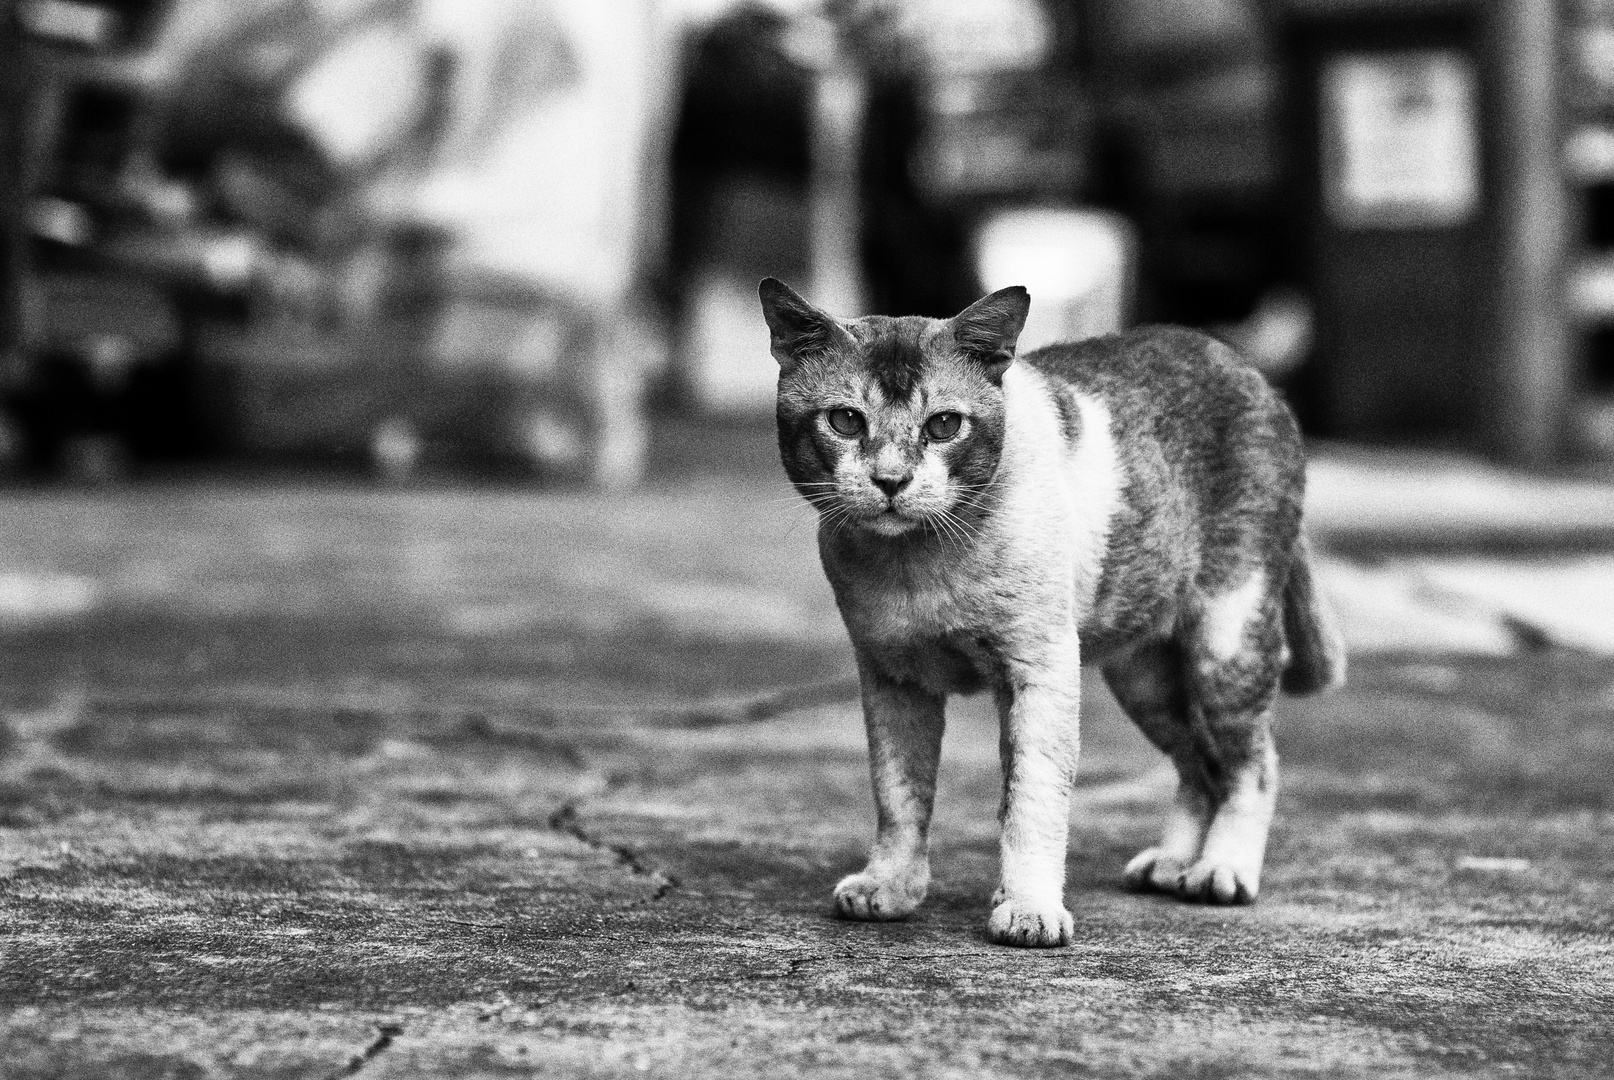 Singapore 10 (Little India) - "Cat"